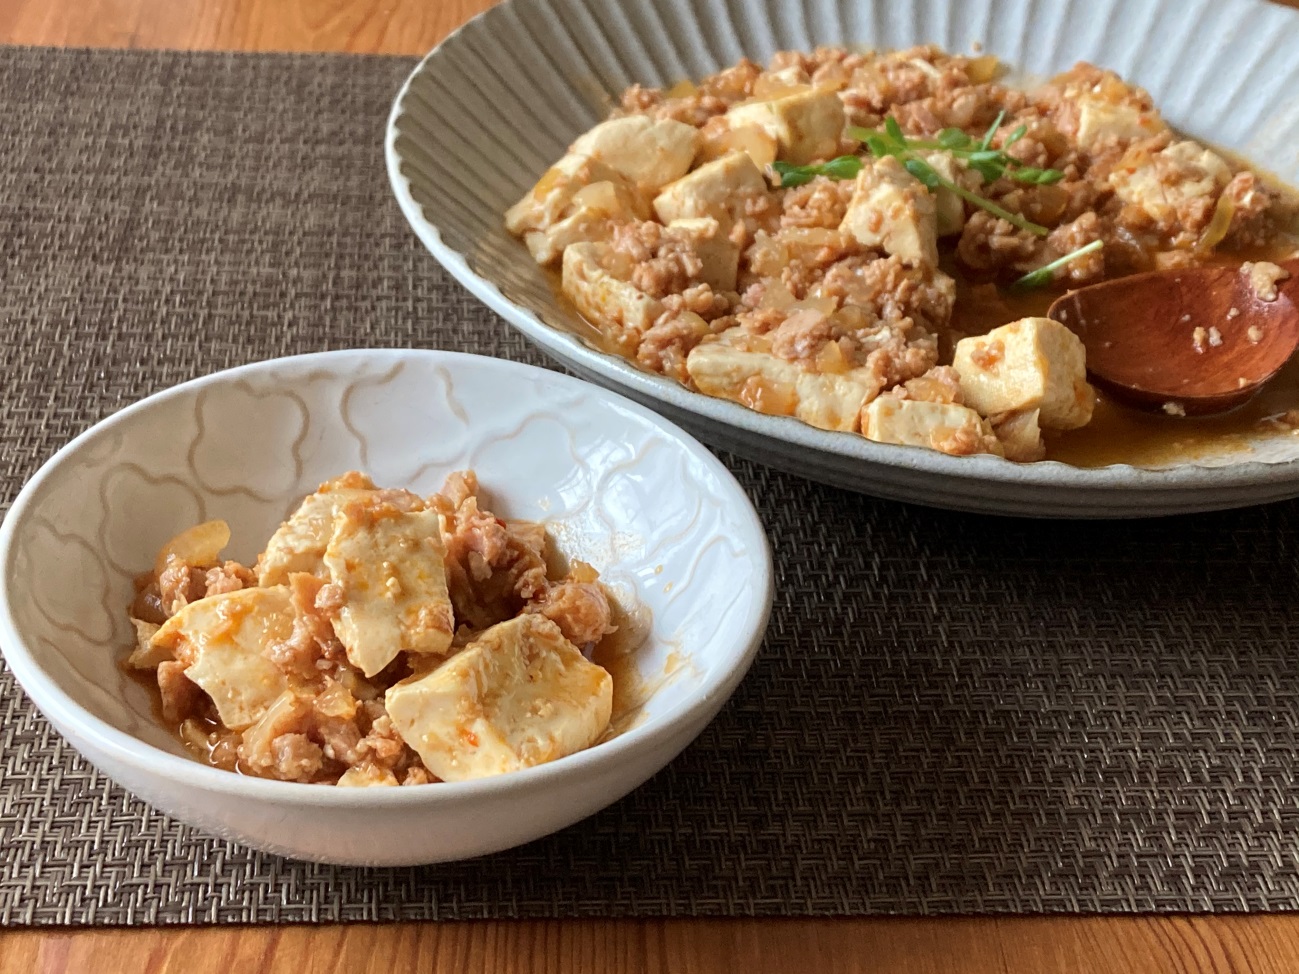 大皿から小皿に取り分けた業務スーパーのポークランチョンミートで作った麻婆豆腐